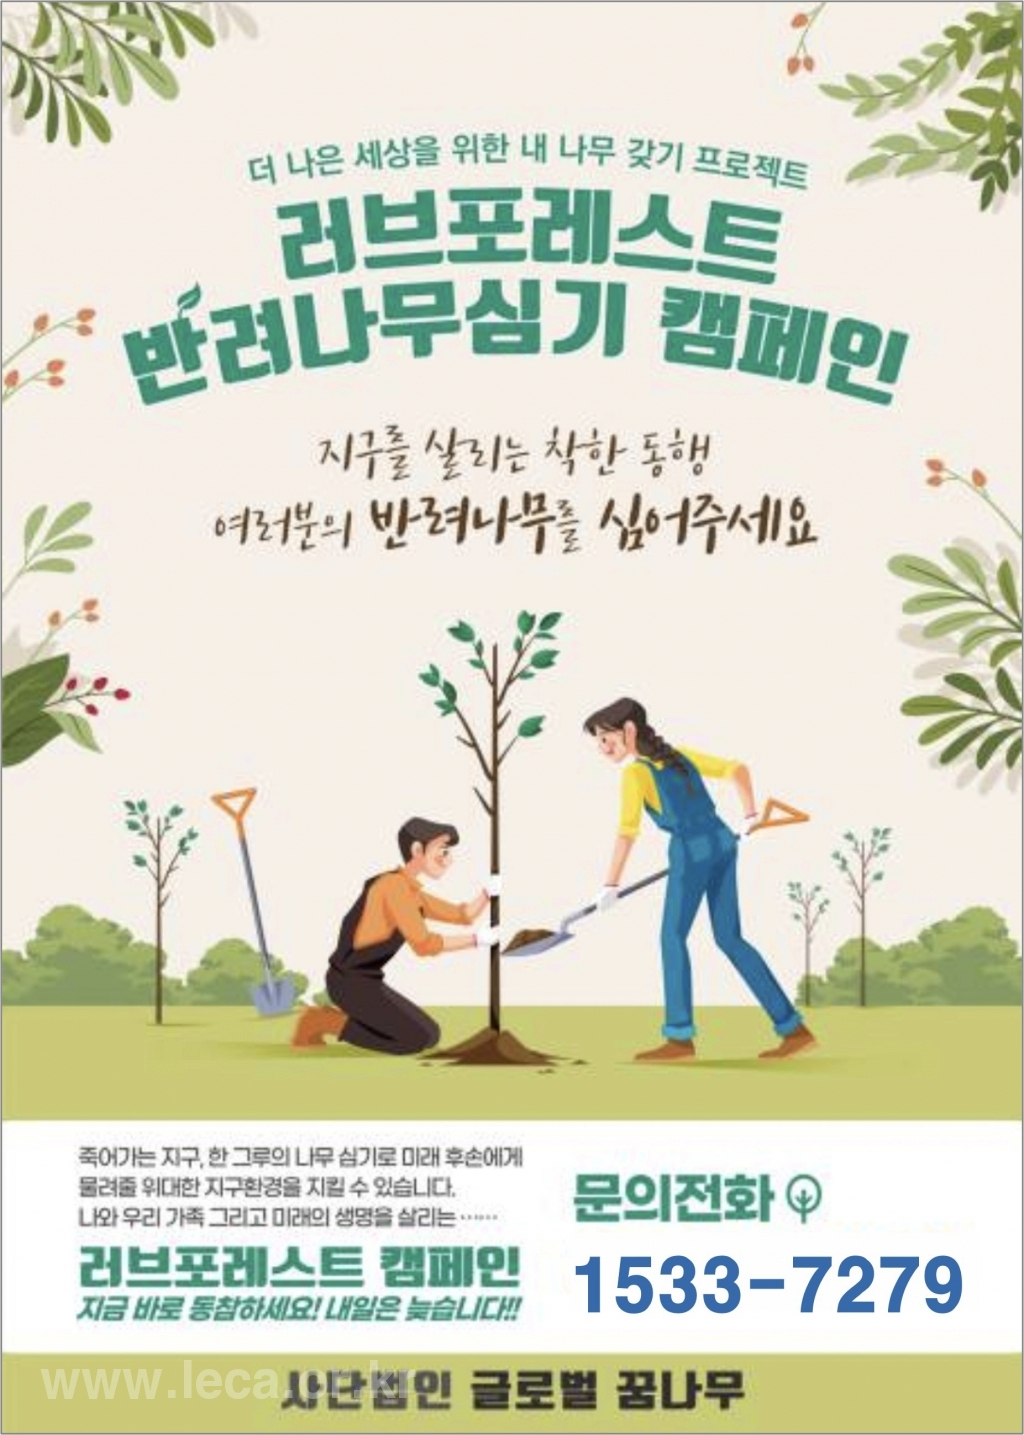 글로벌꿈나무 희망의 나무심기 캠페인